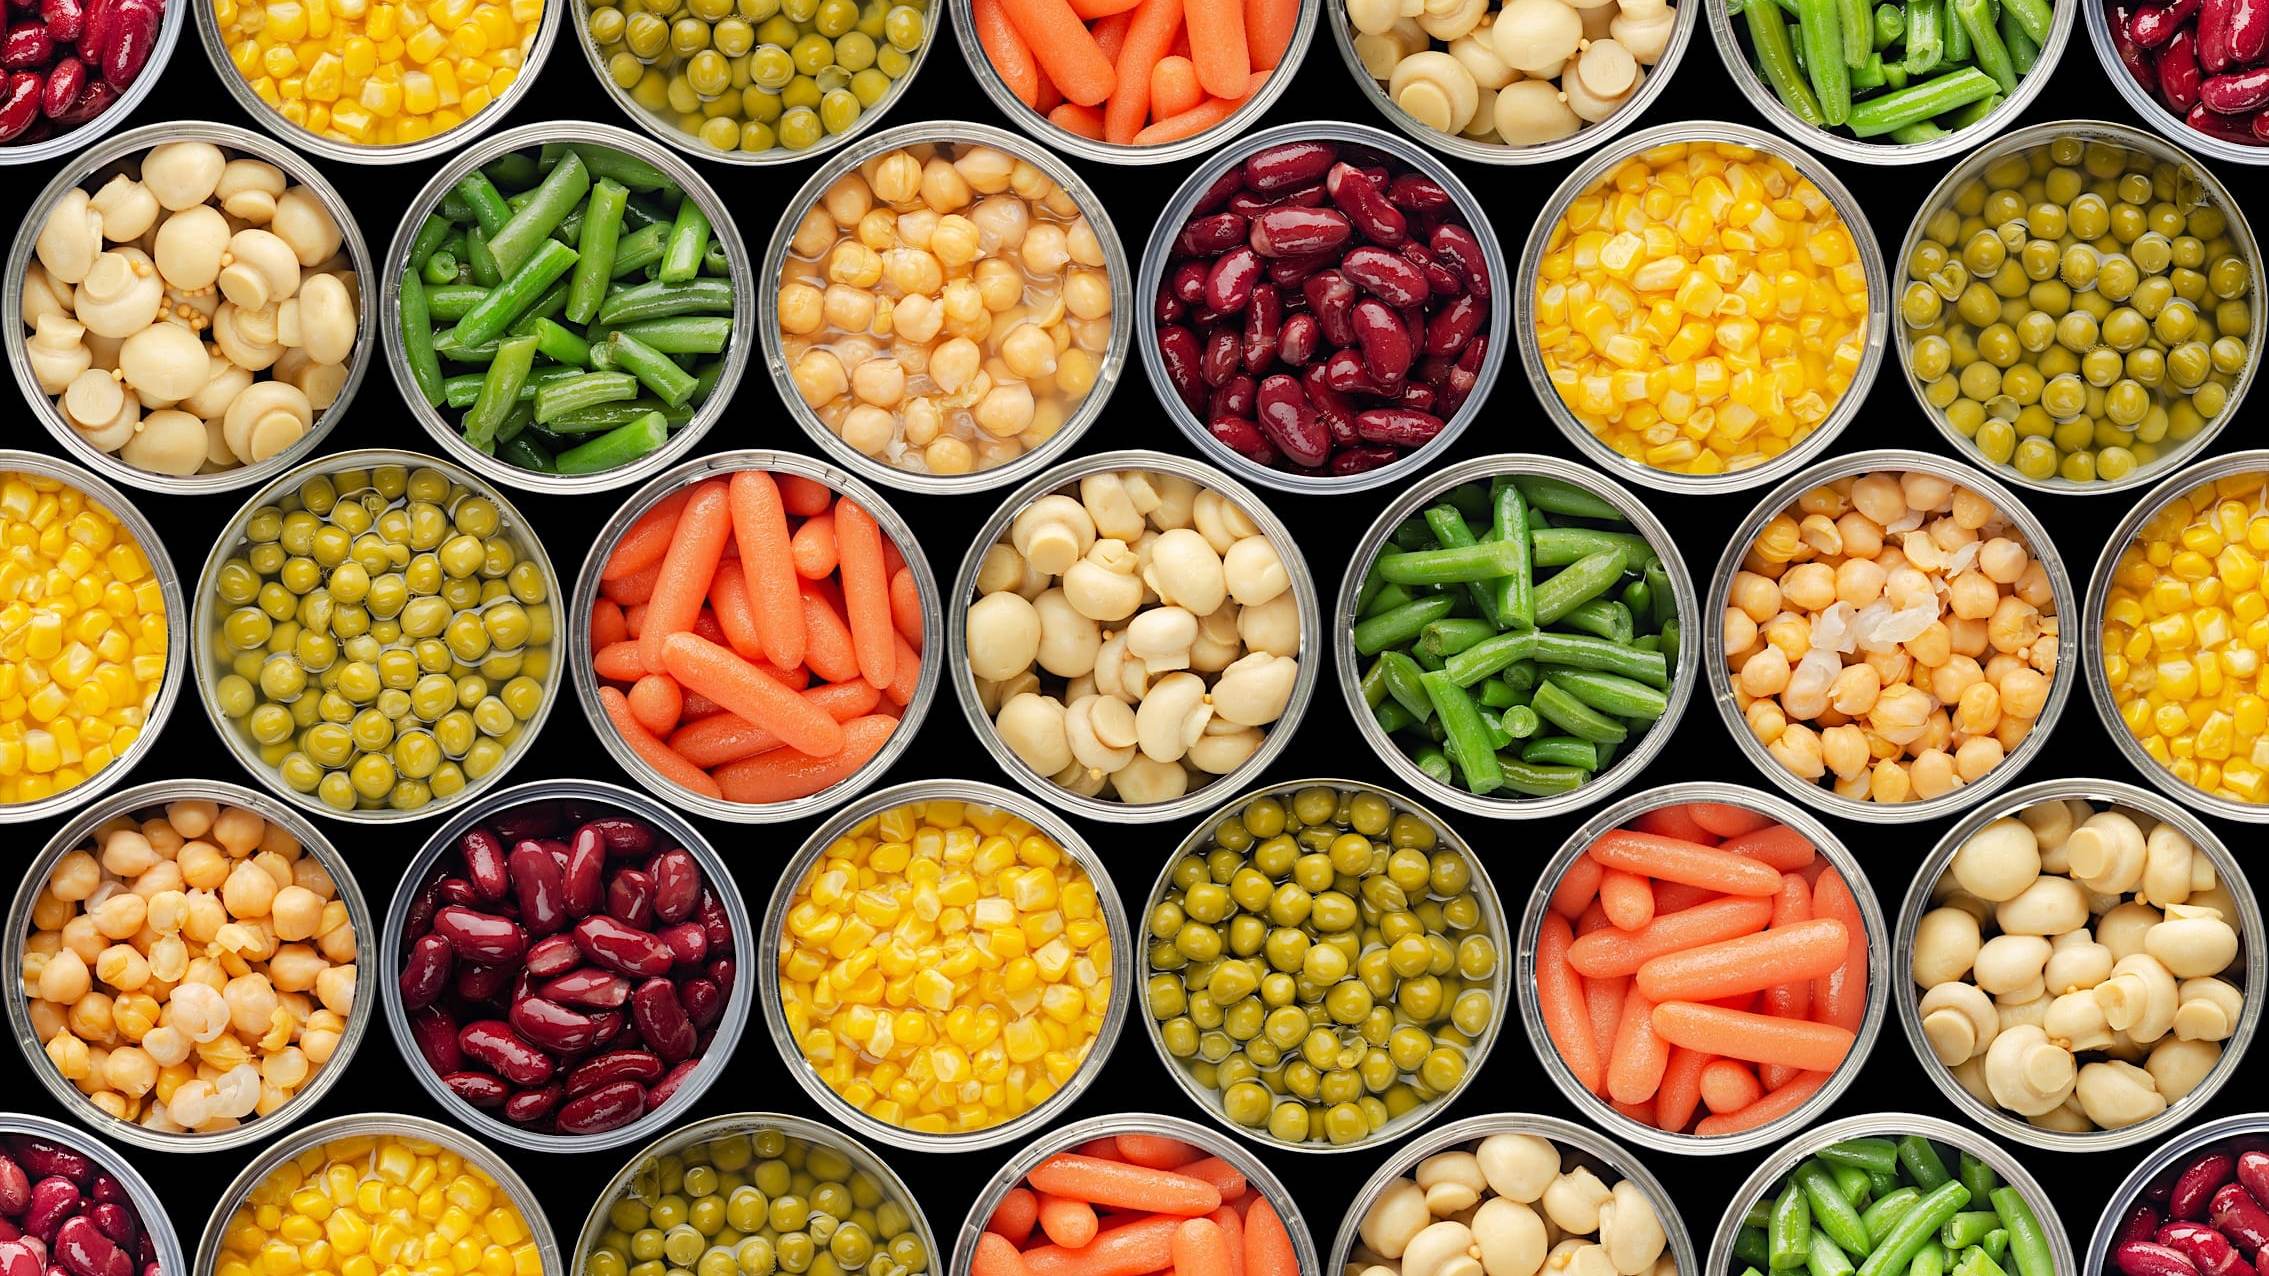 Gros plan sur des rangées de conserves ouvertes d'aliments variés: haricots verts, carottes, maïs, haricots rouges, petits pois, champignons et pois chiches